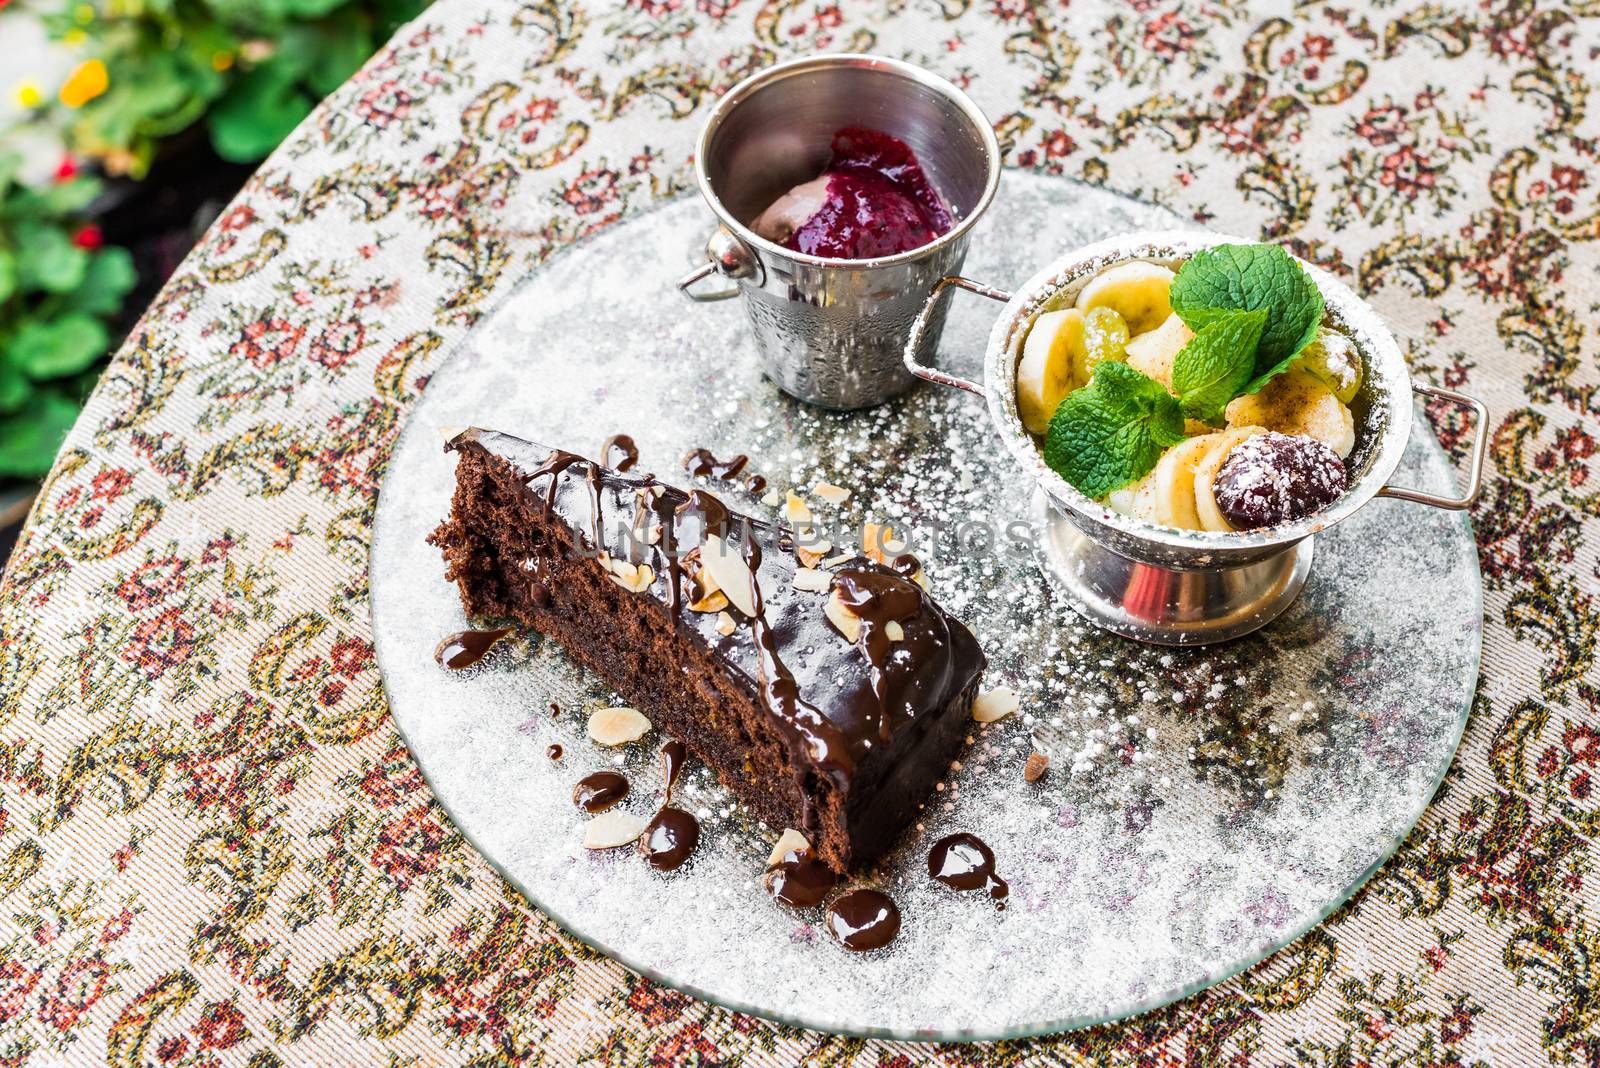 Chocolate cake, fruit and ice cream by okskukuruza